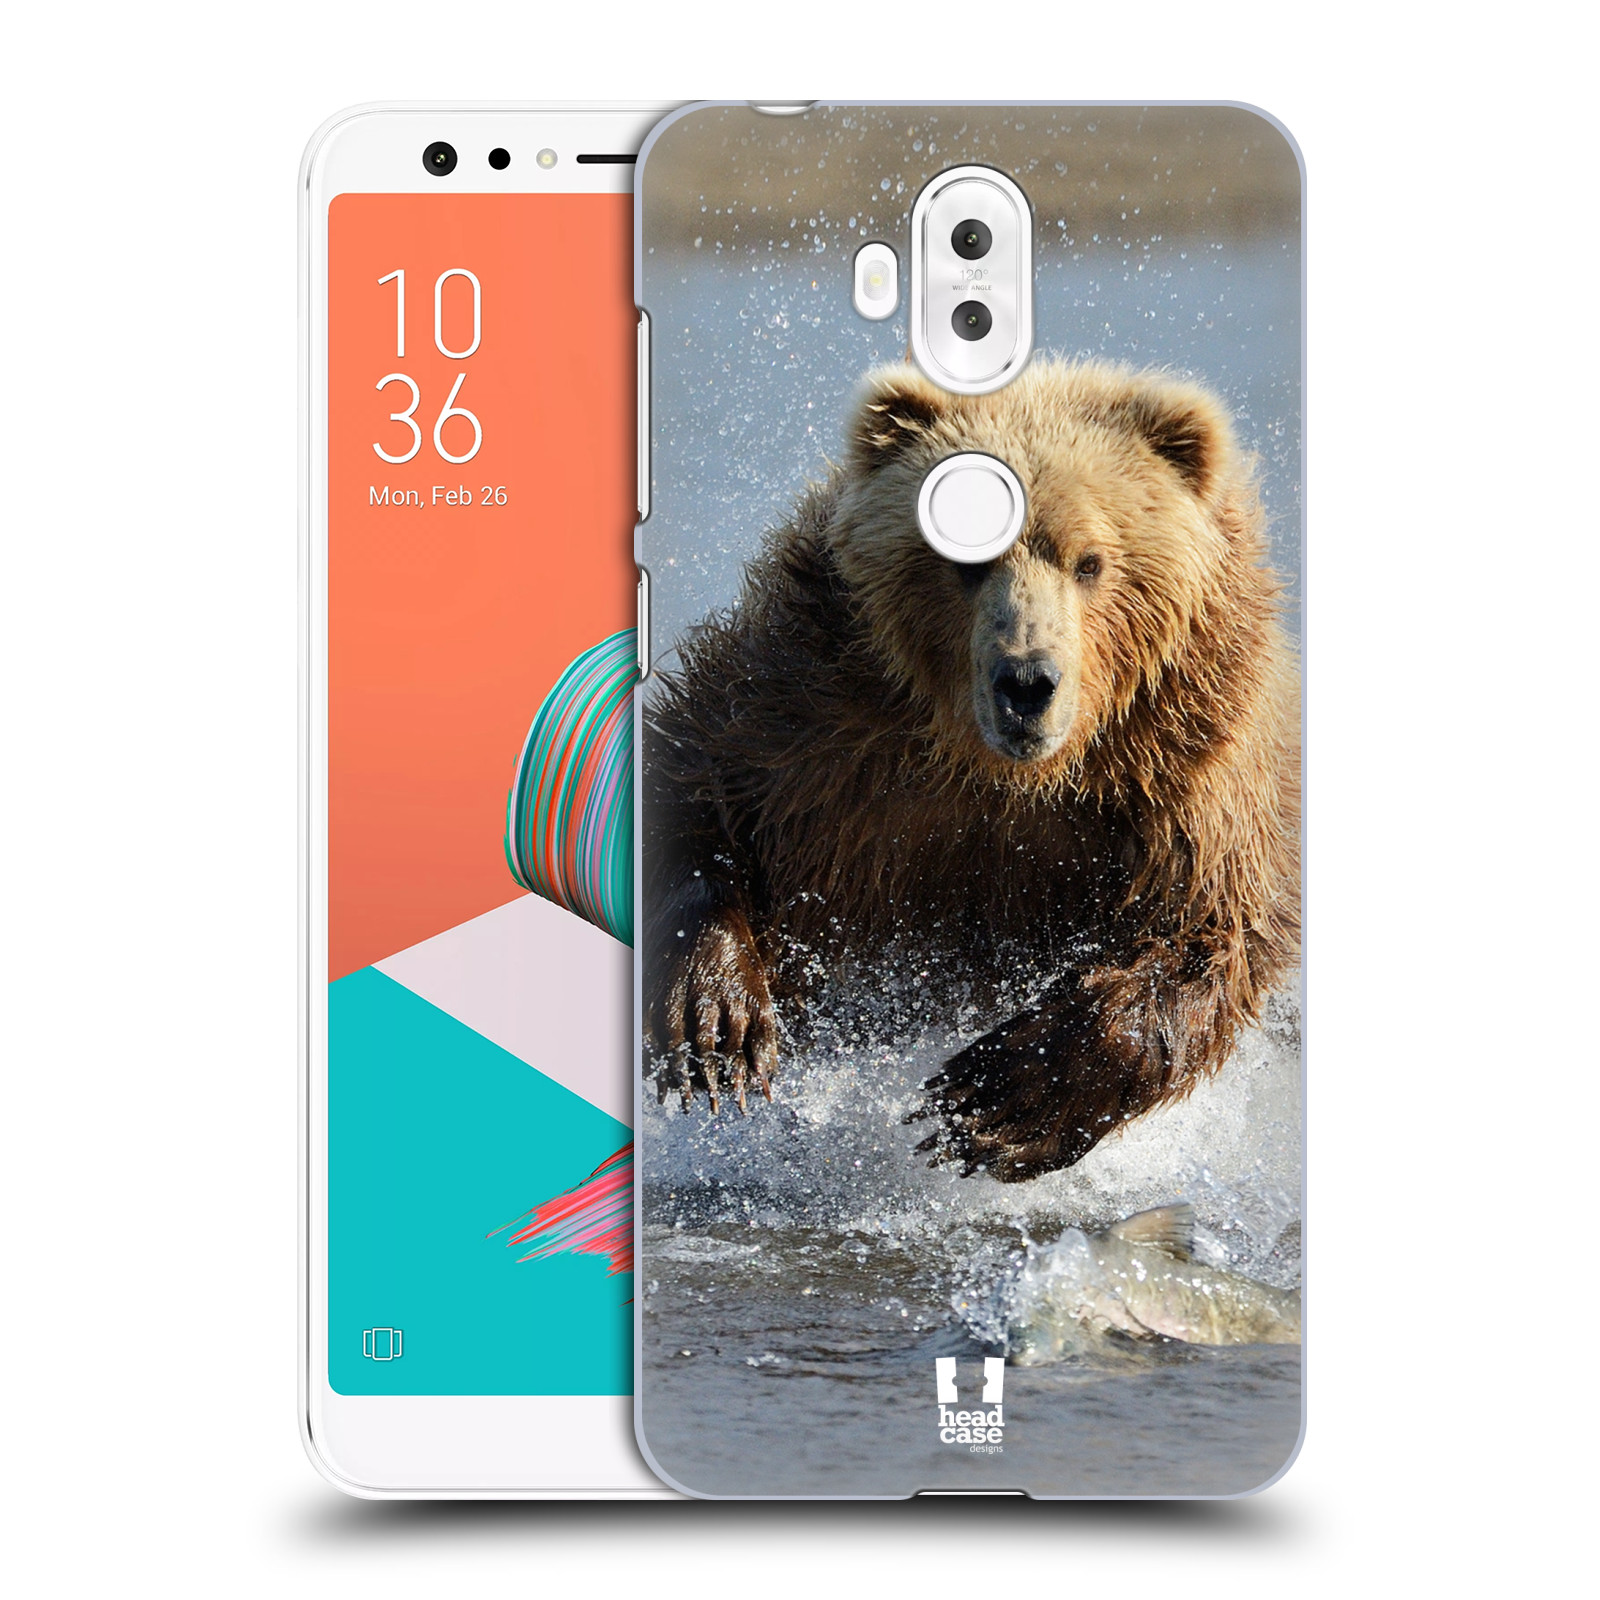 HEAD CASE plastový obal na mobil Asus Zenfone 5 LITE ZC600KL vzor Divočina, Divoký život a zvířata foto MEDVĚD GRIZZLY HŇEDÁ